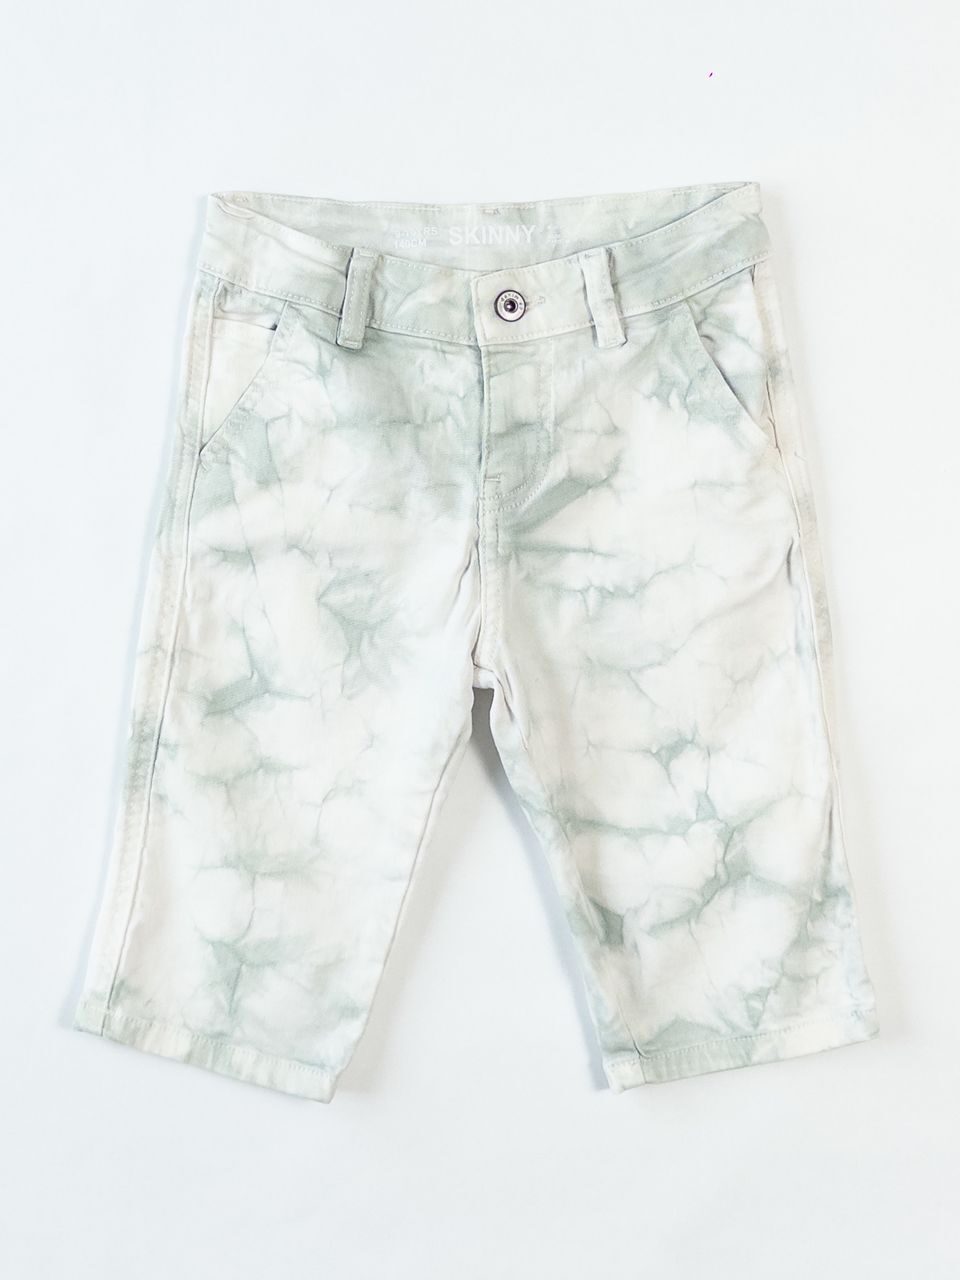 Шорты скини джинсовые для мальчика с регулировкой в талии цвет белый/зеленый на рост 140 см 9-10 лет Primark (имеется незначительное пятнышко на кармане сзади)